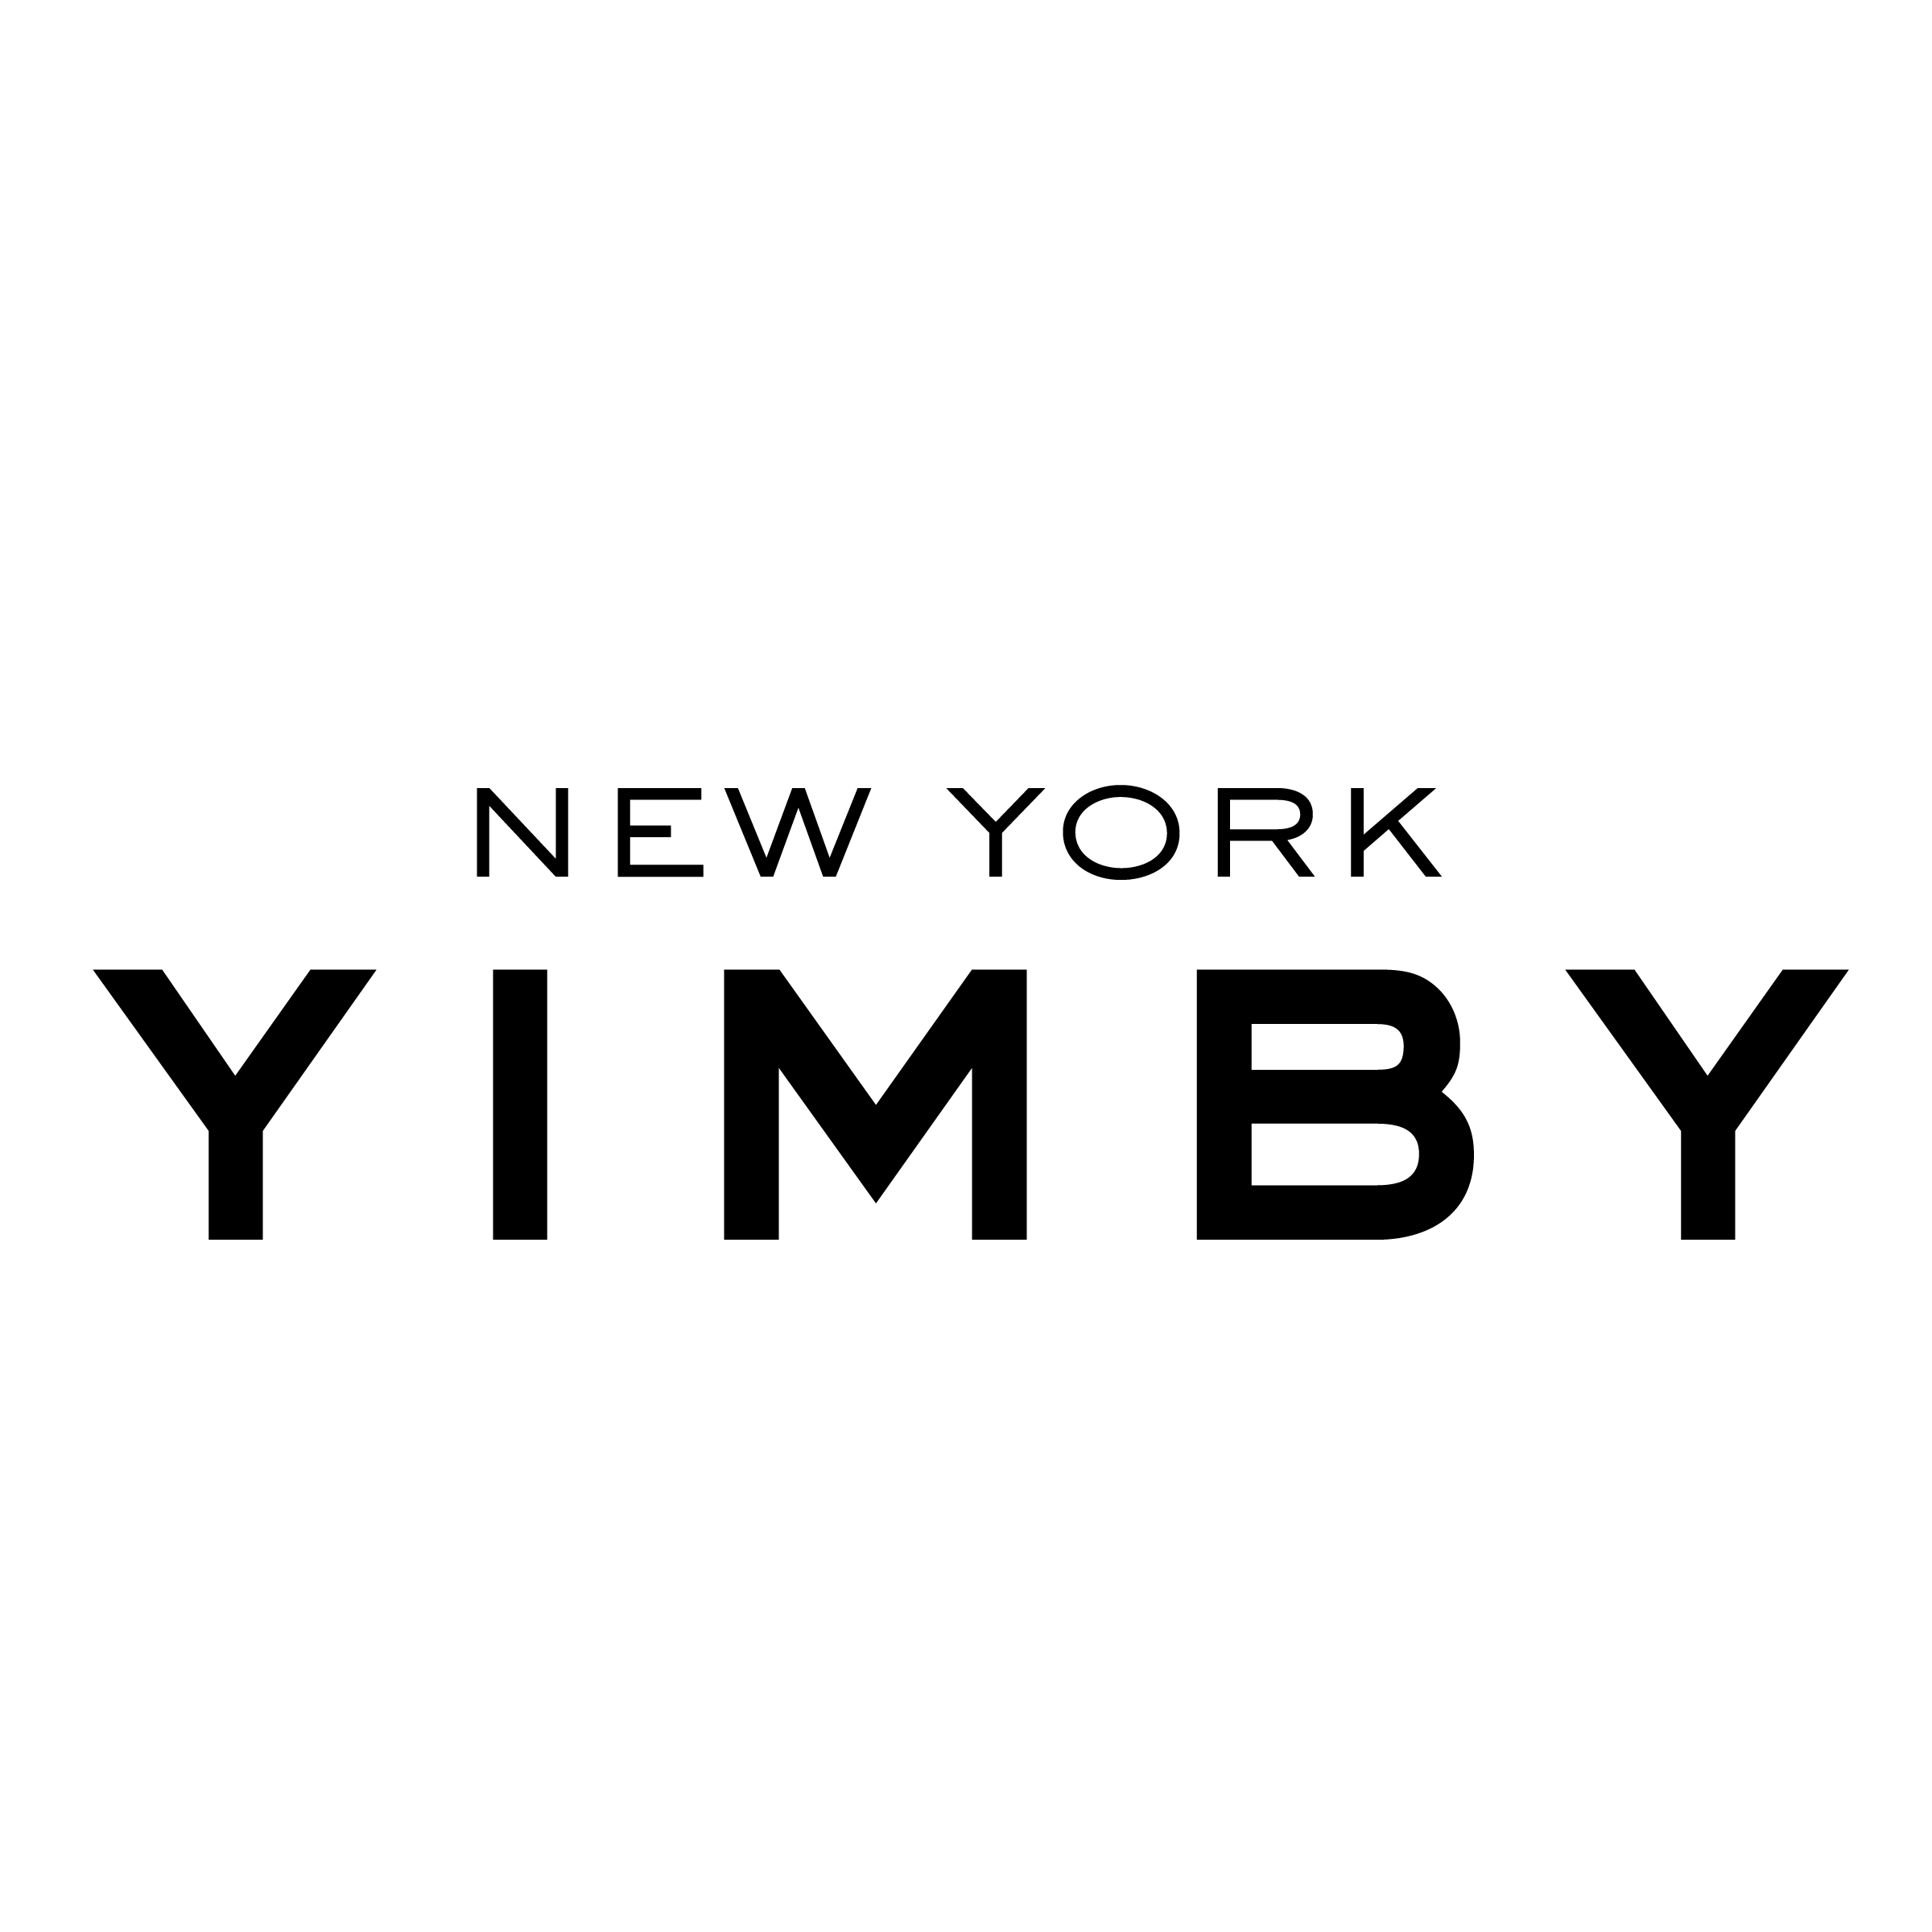 New york yimby logo